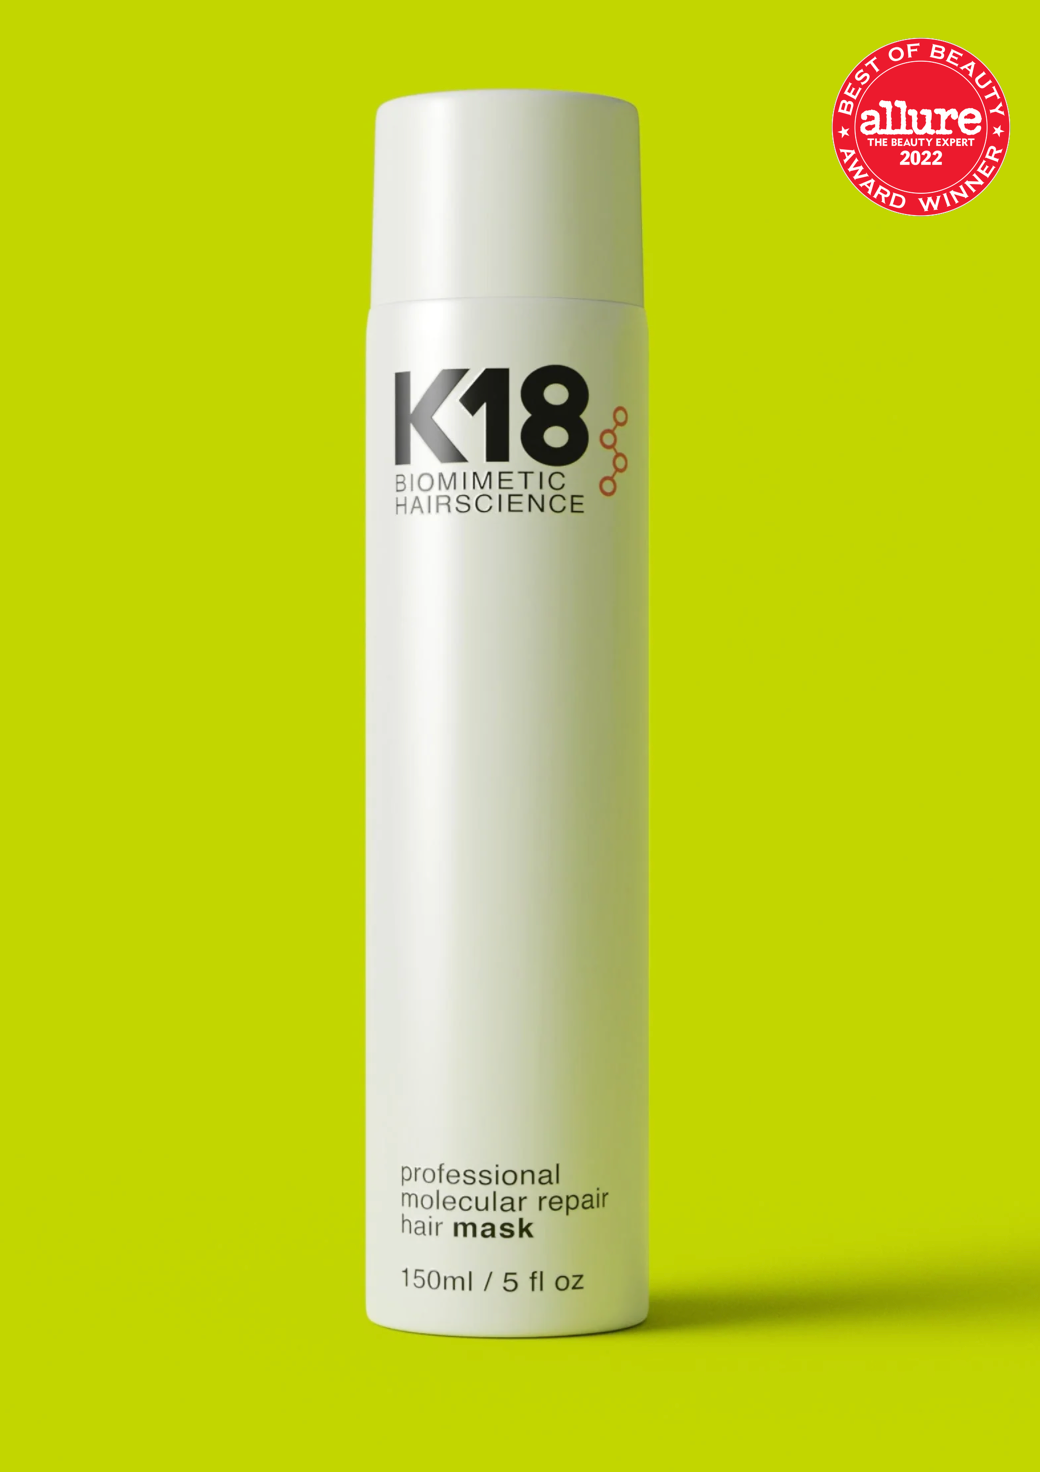 K18 Professional molecular repair hair mask